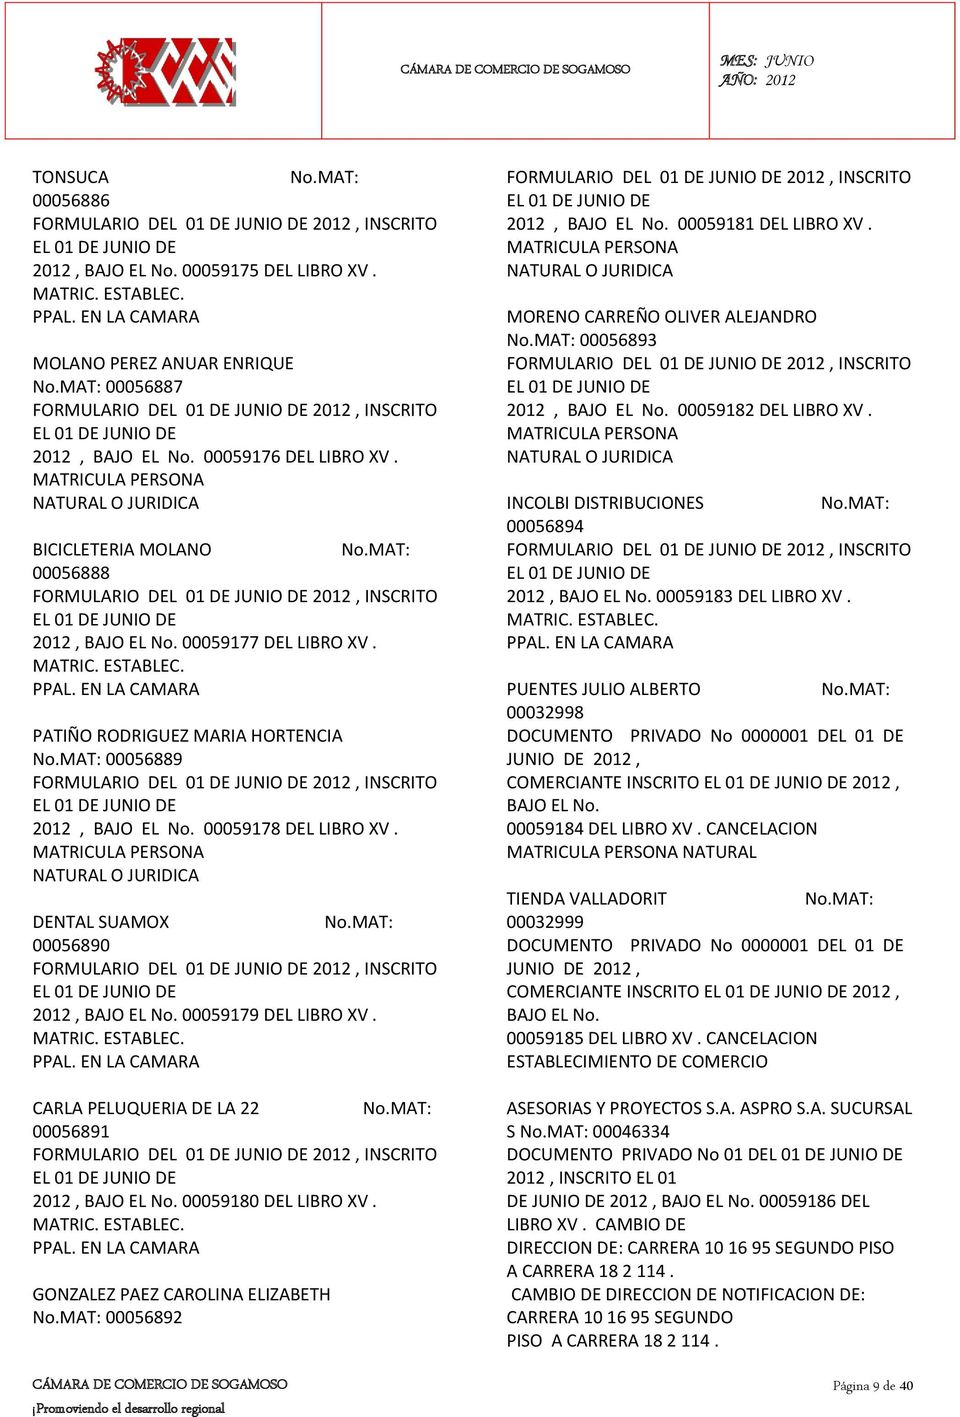 BICICLETERIA MOLANO 00056888 FORMULARIO DEL 01 DE INSCRITO EL 01 DE JUNIO DE 2012, 00059177 DEL LIBRO XV.